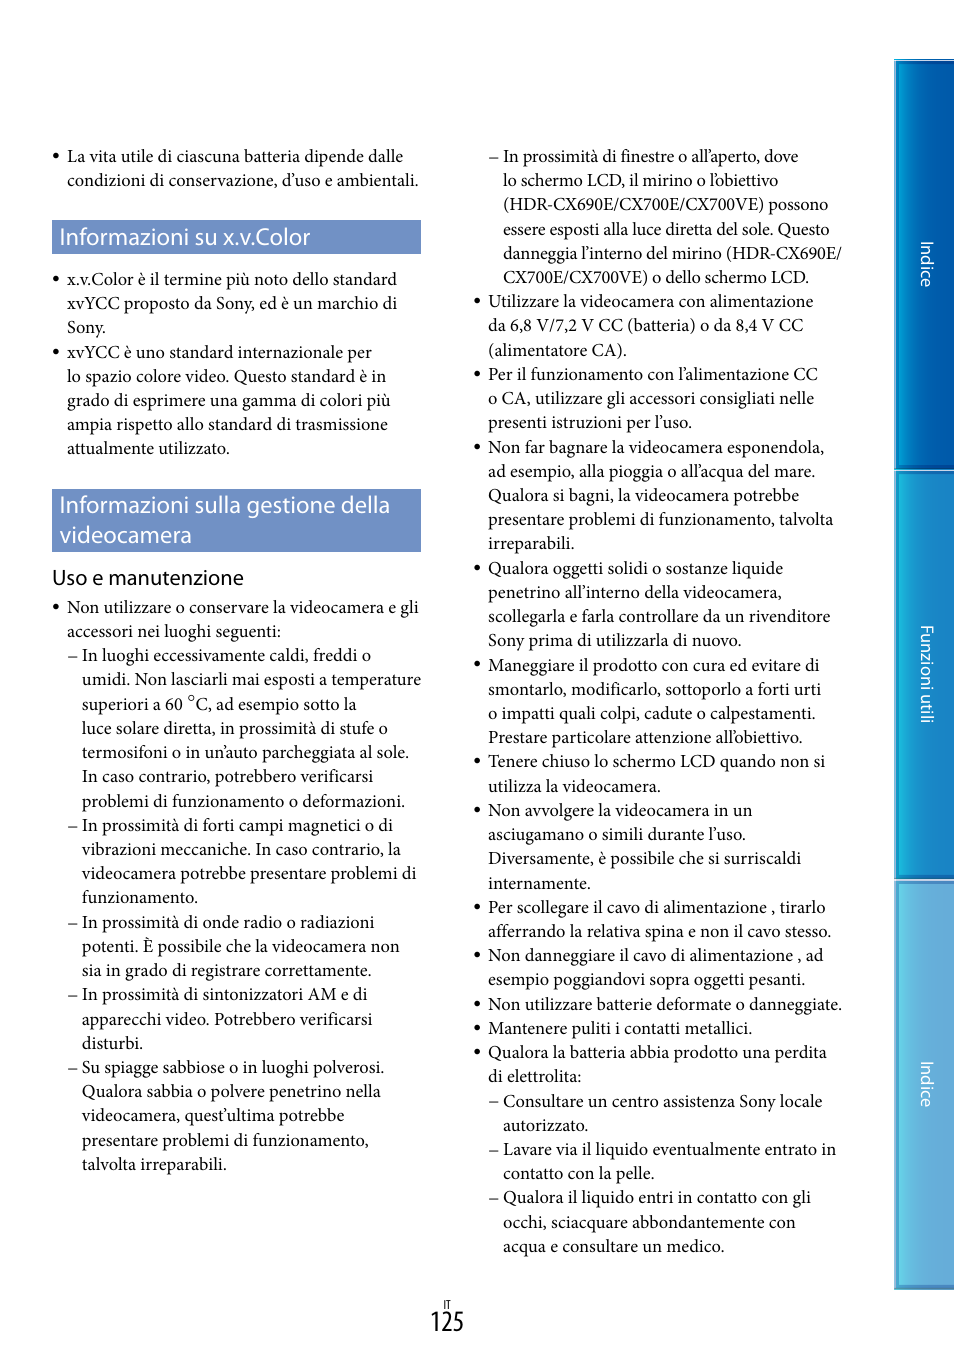 Informazioni su x.v.color, Informazioni sulla gestione della videocamera, Uso e manutenzione | Sony HDR-CX700VE Manuale d'uso | Pagina 125 / 138